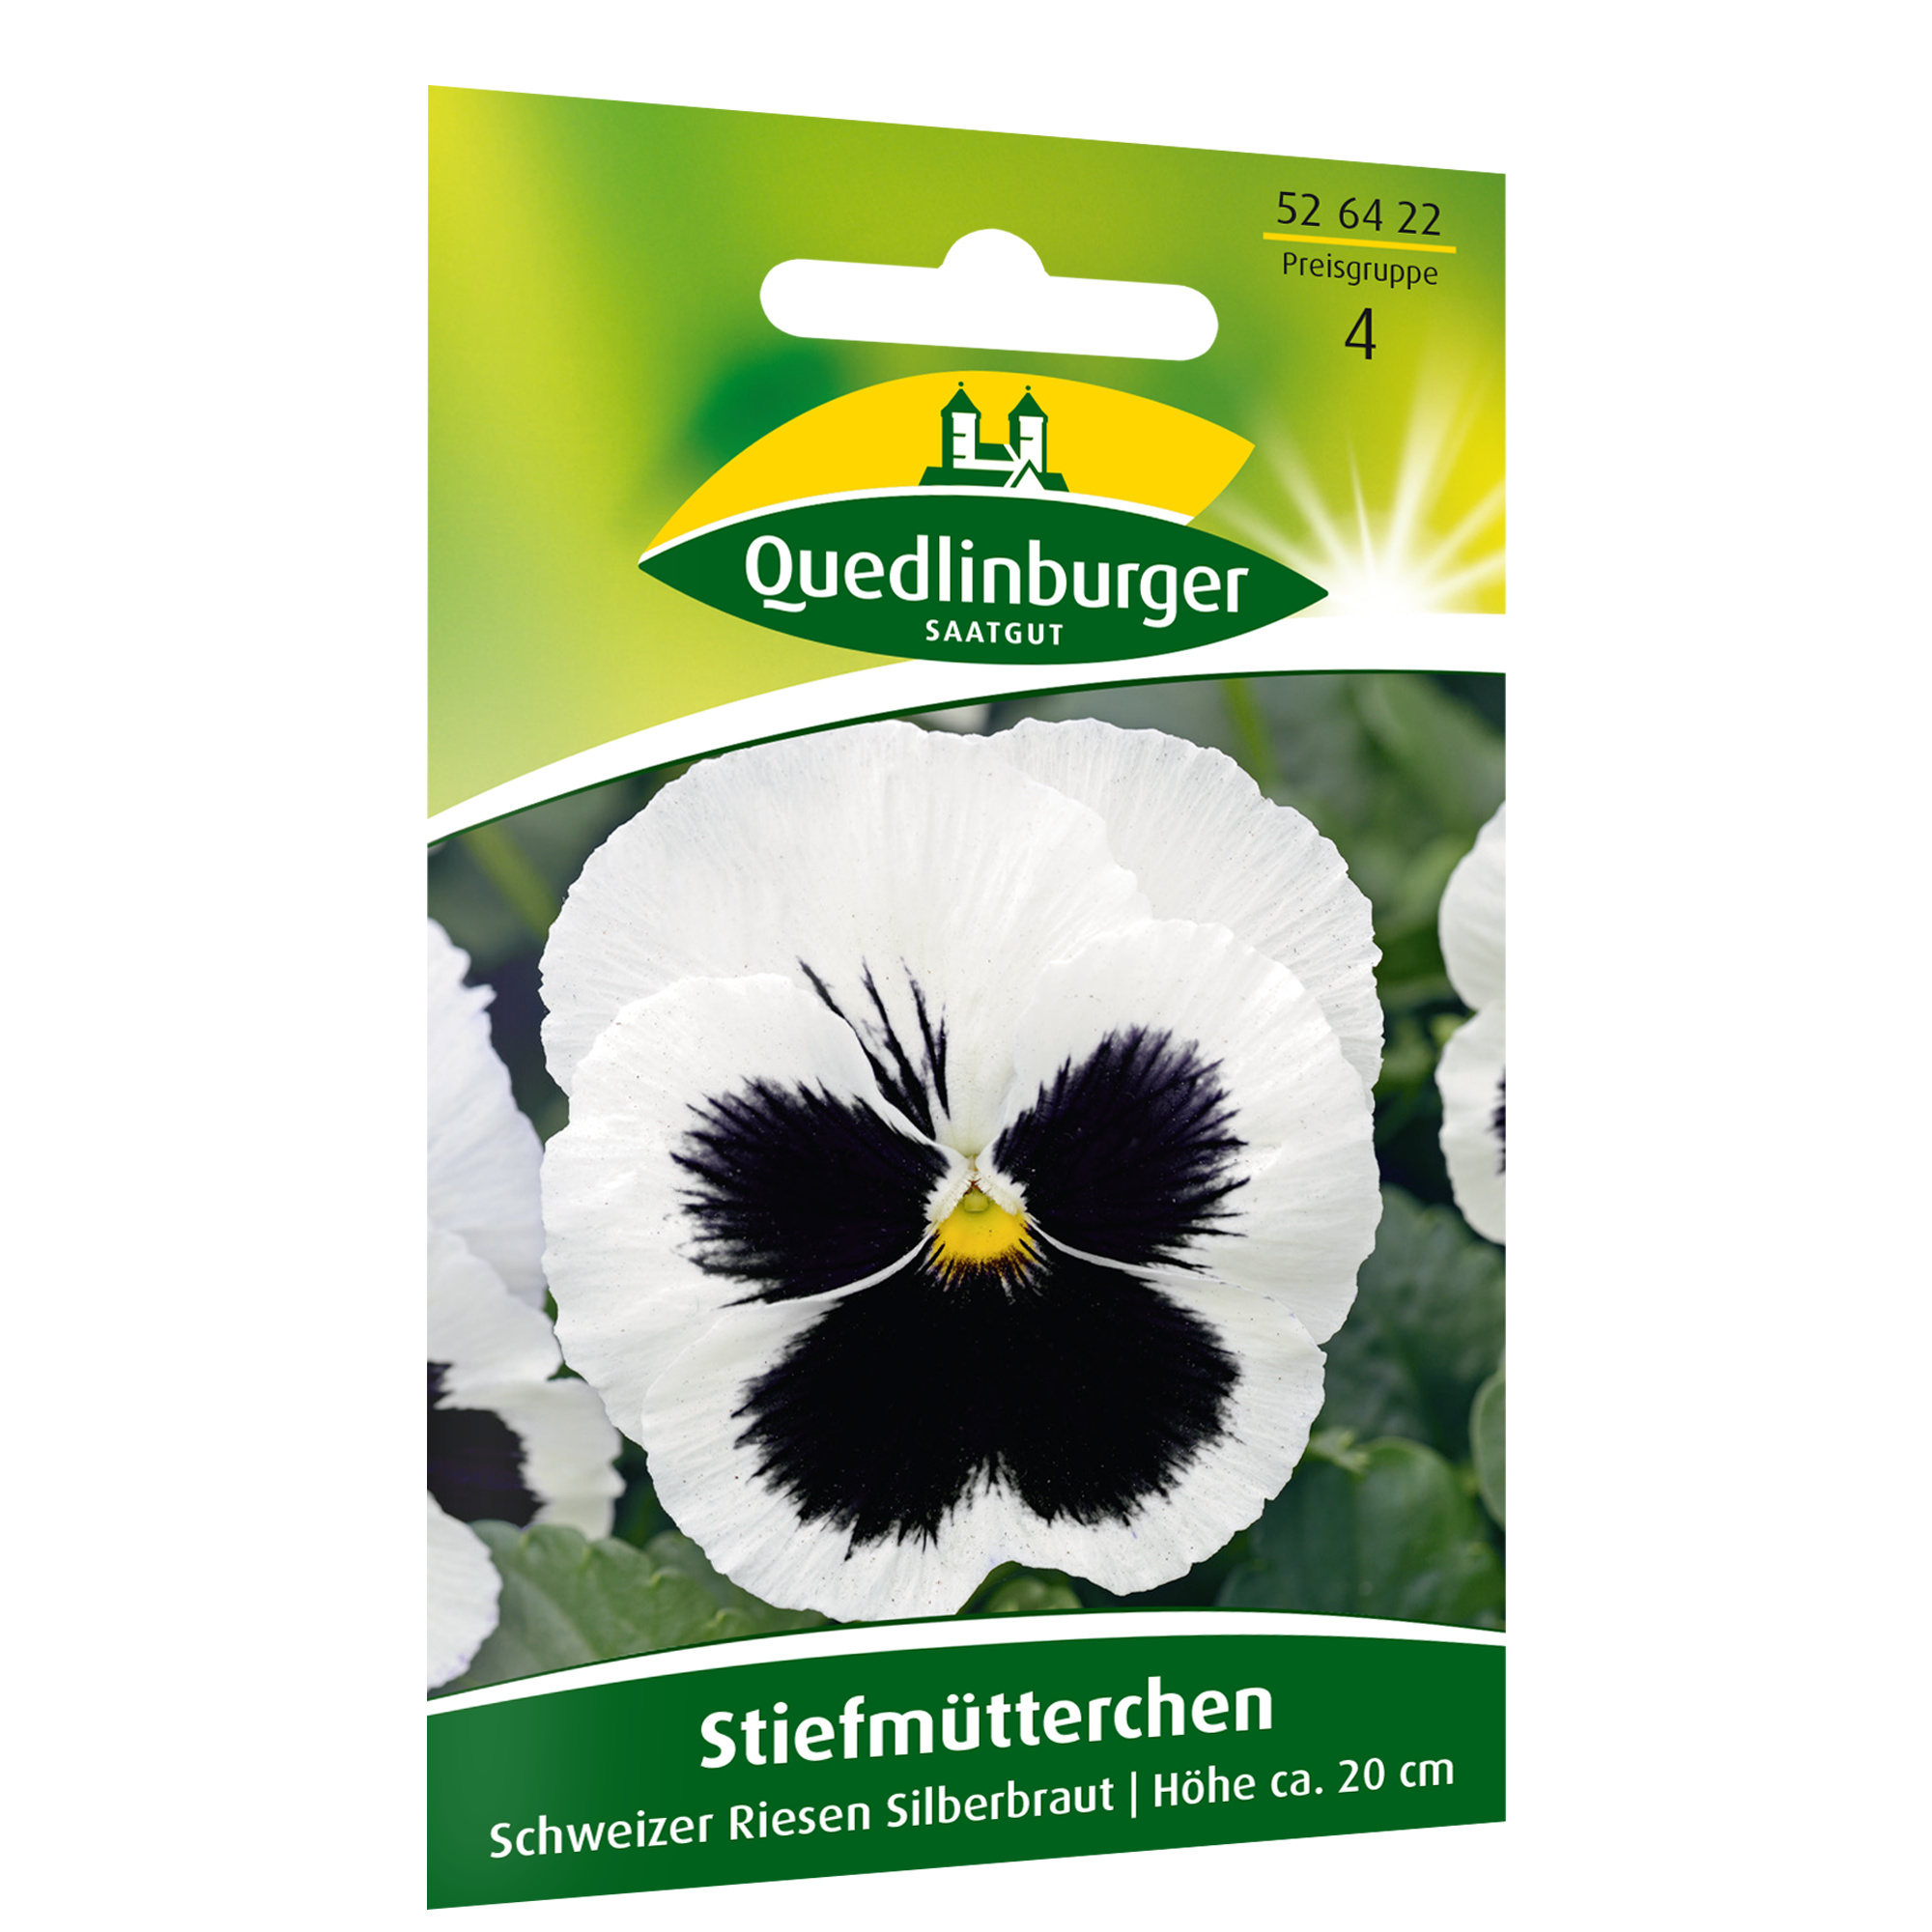 Stiefmütterchen 'Schweizer Riesen Silberbraut' + product picture